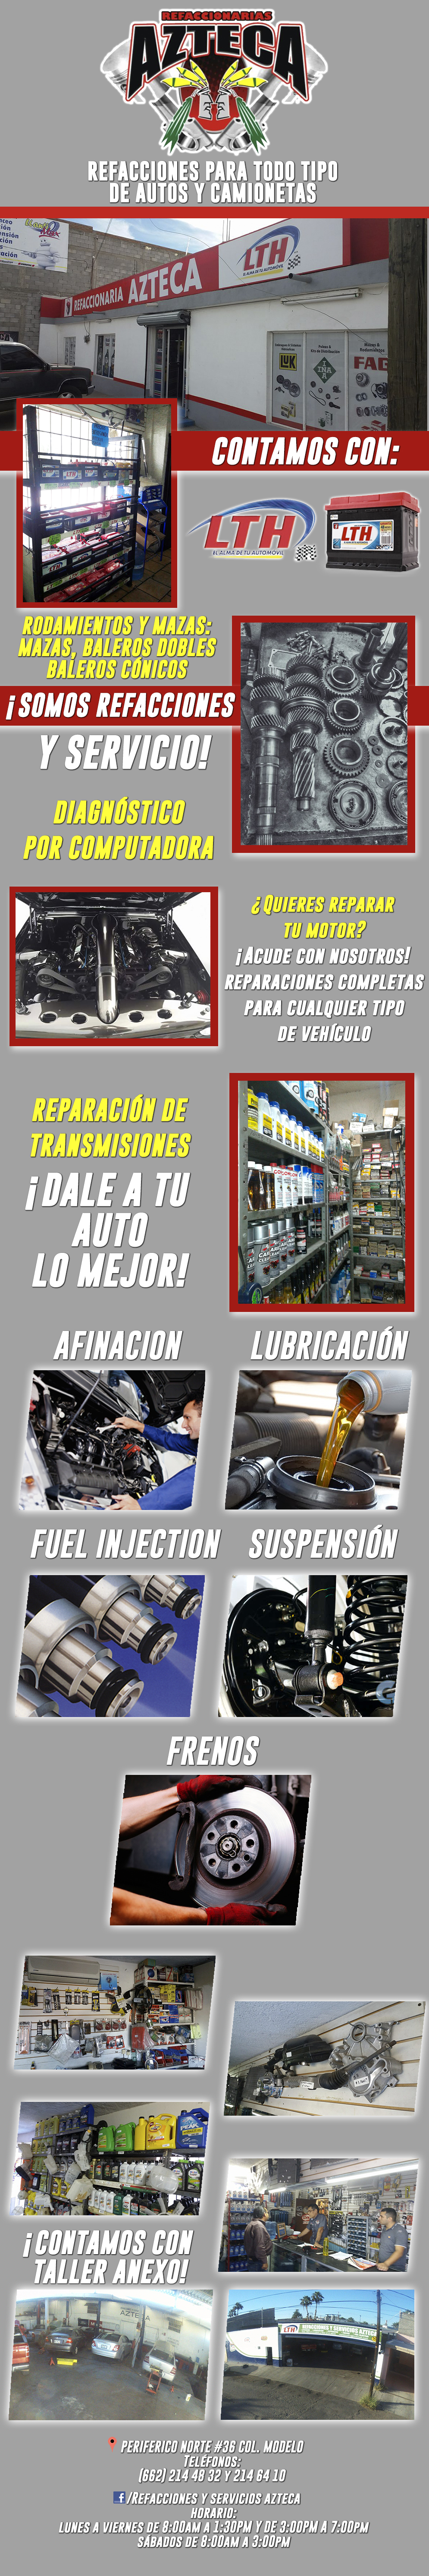 Refaccionaria AZTECA Perinorte -Refacciones para todo tipo de Automóviles y Camiones. Contamos con una gran variedad de Refacciones. CONTAMOS CON TALLER ANEXO.     